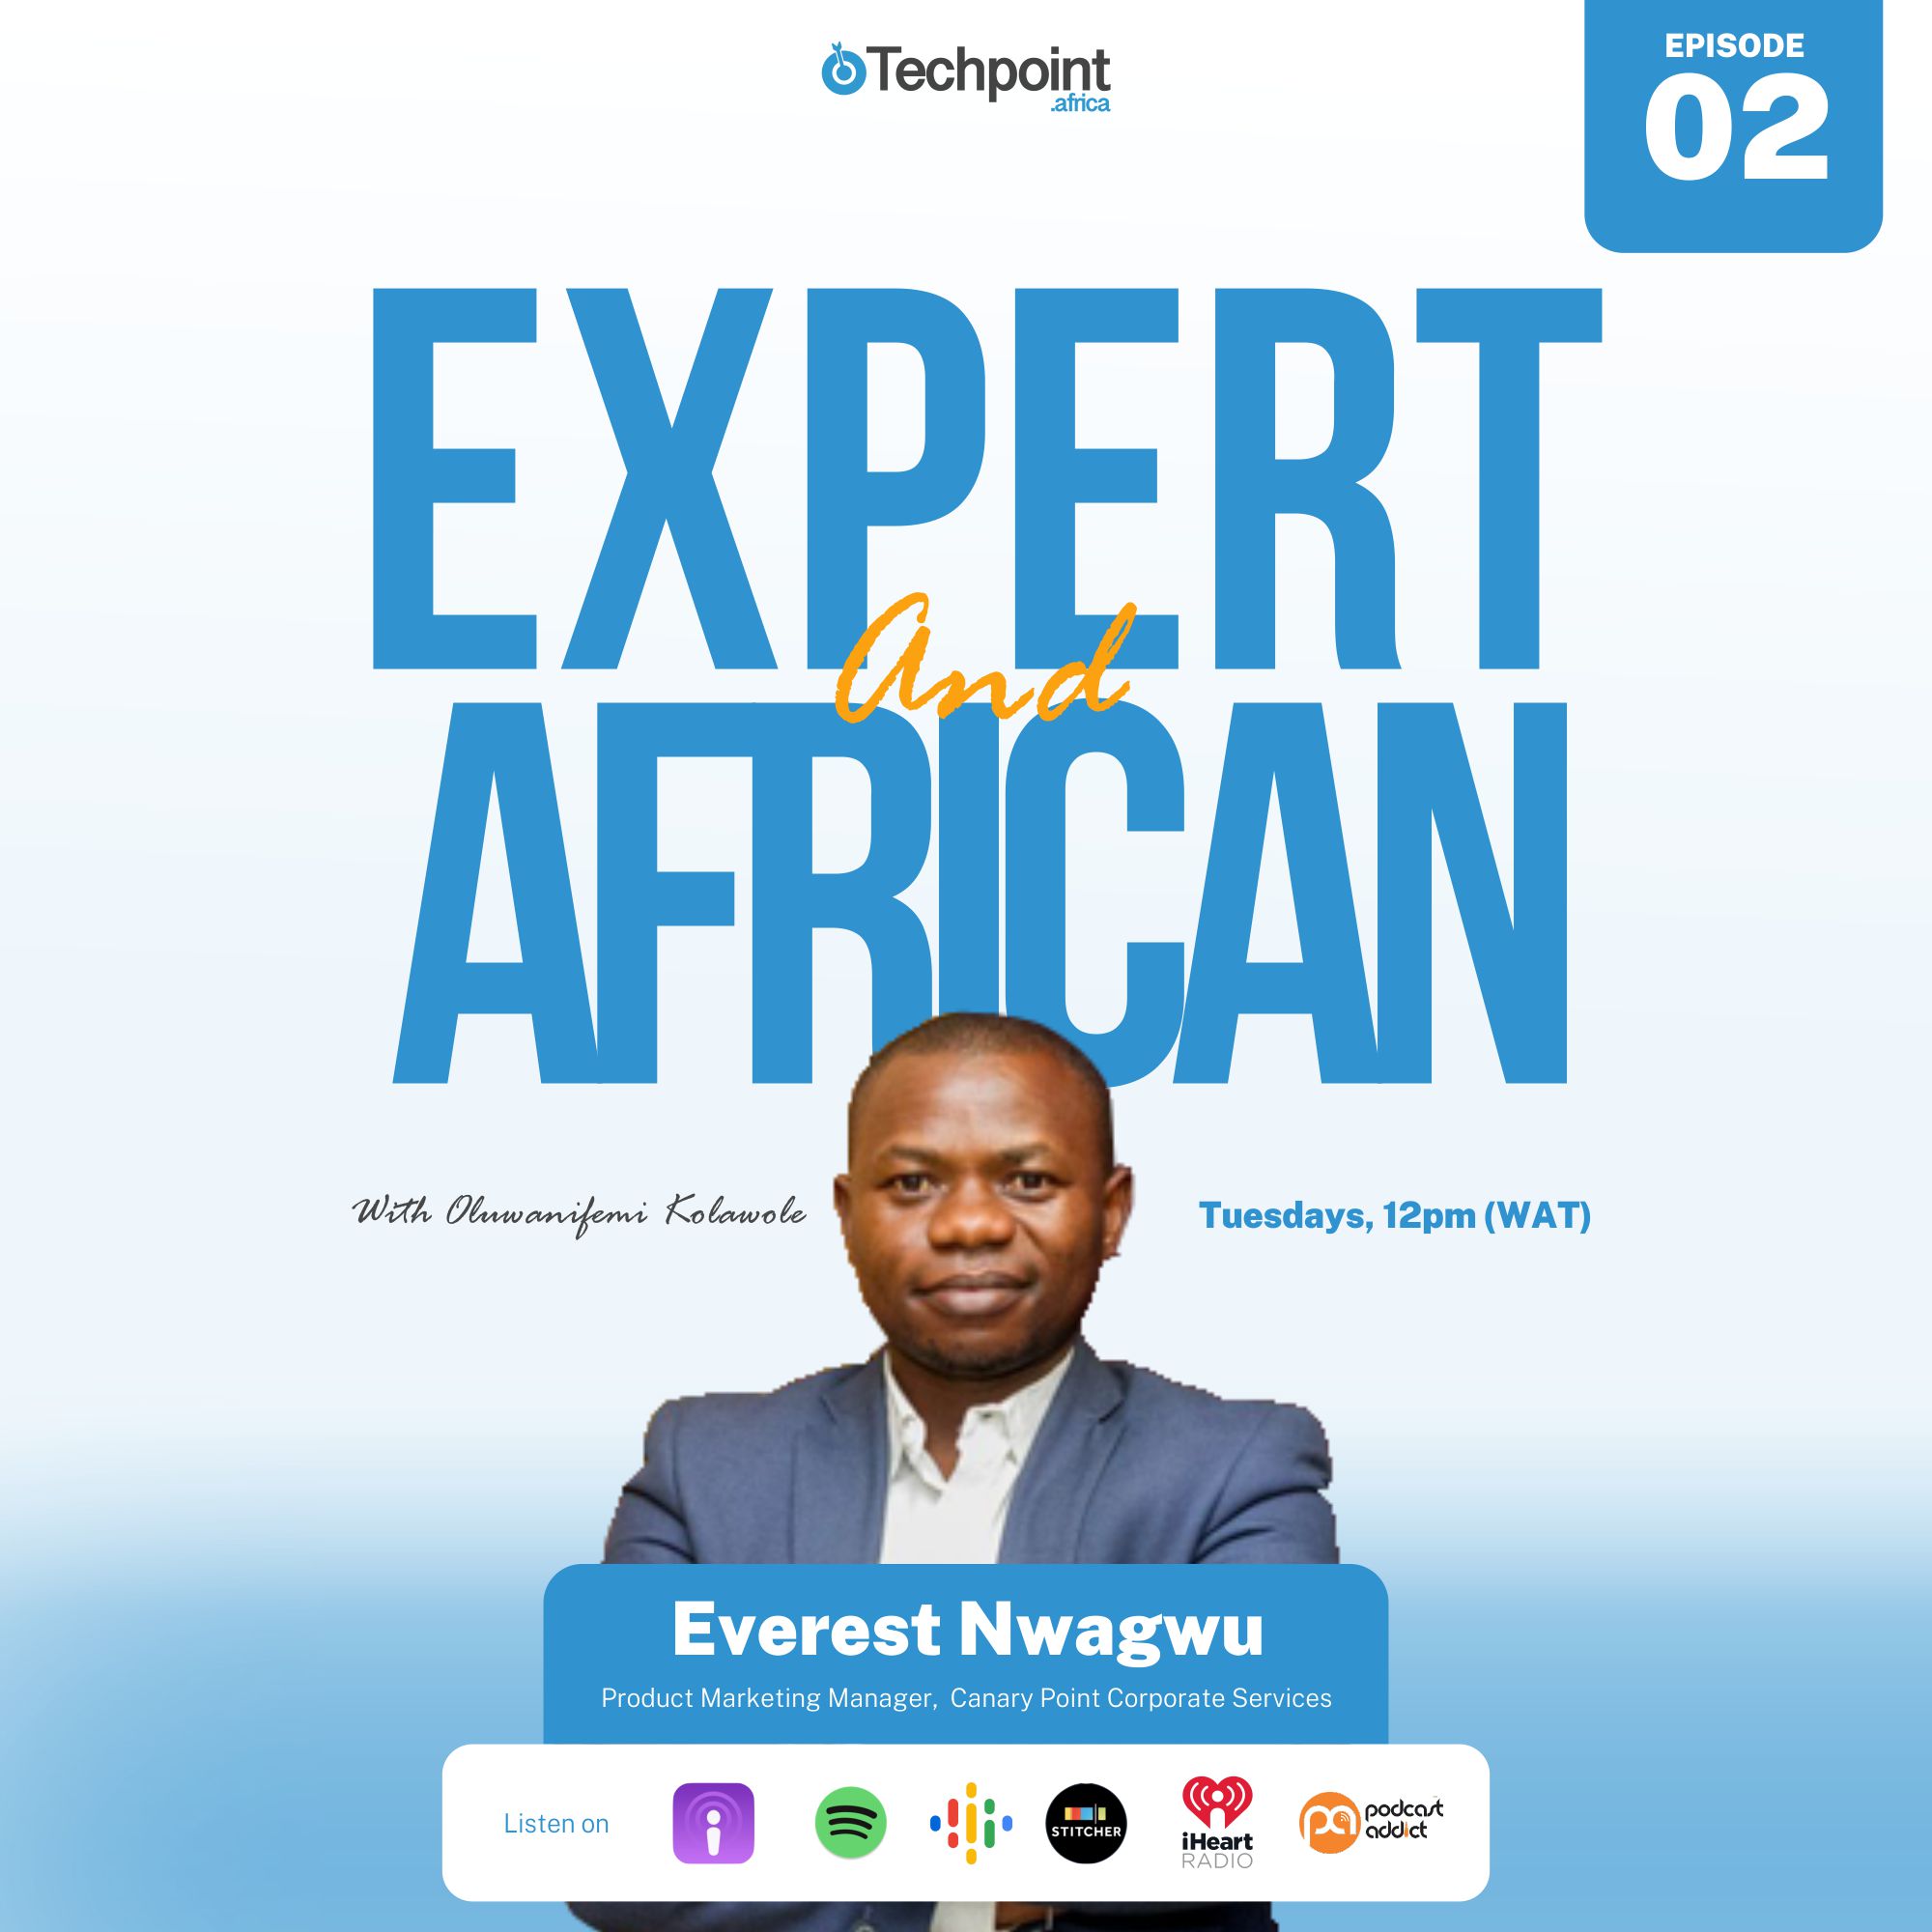 Everest Nwagwu: Product Marketing expert